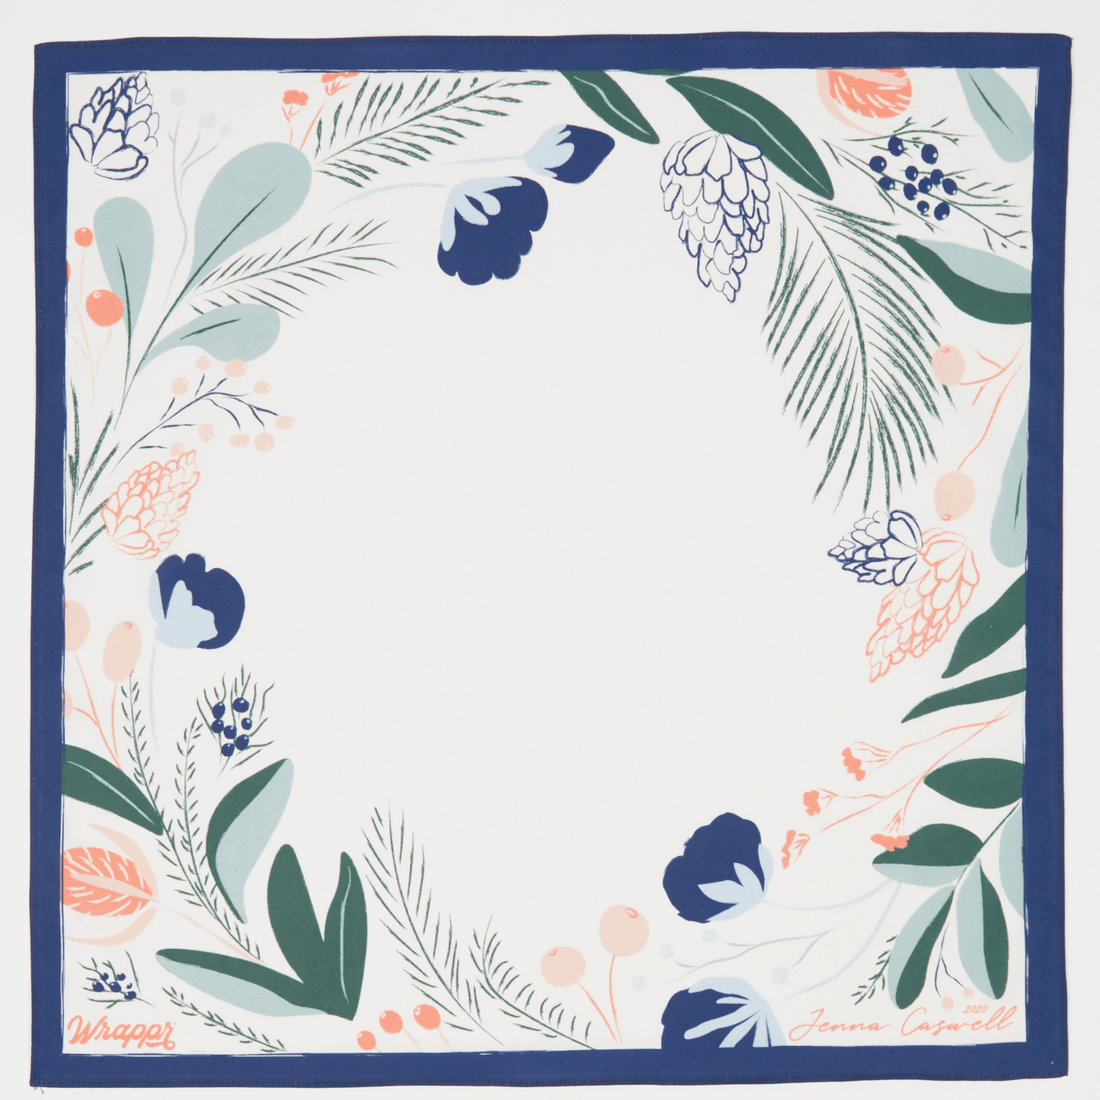 Evergreen | 18" Furoshiki Wrap by Jenna Caswell - Wrappr